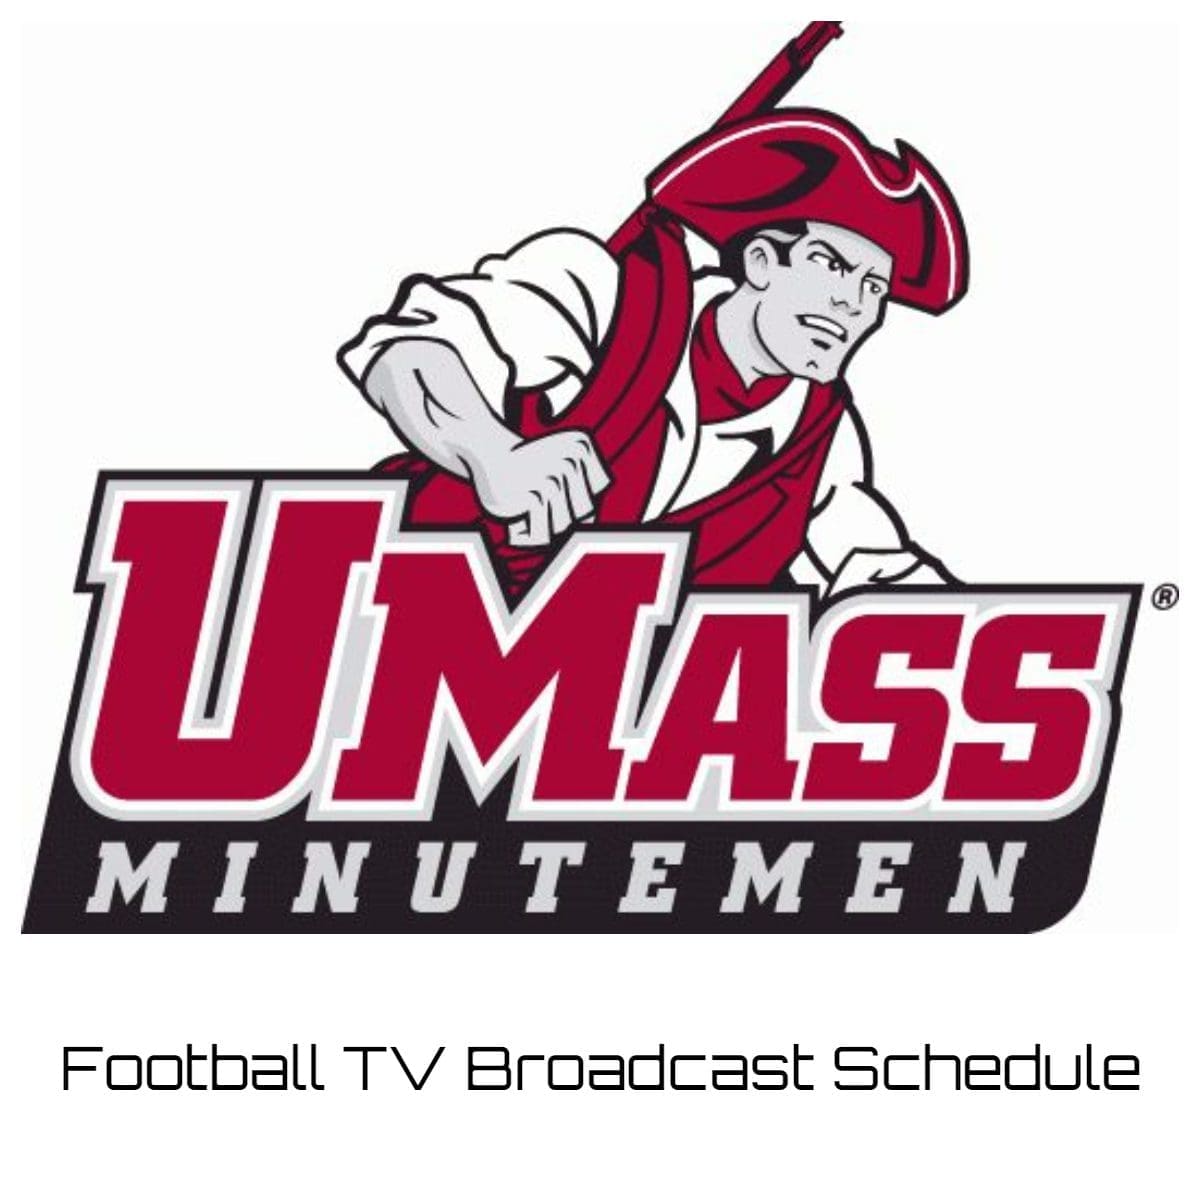 UMass Minutemen Football TV Broadcast Schedule